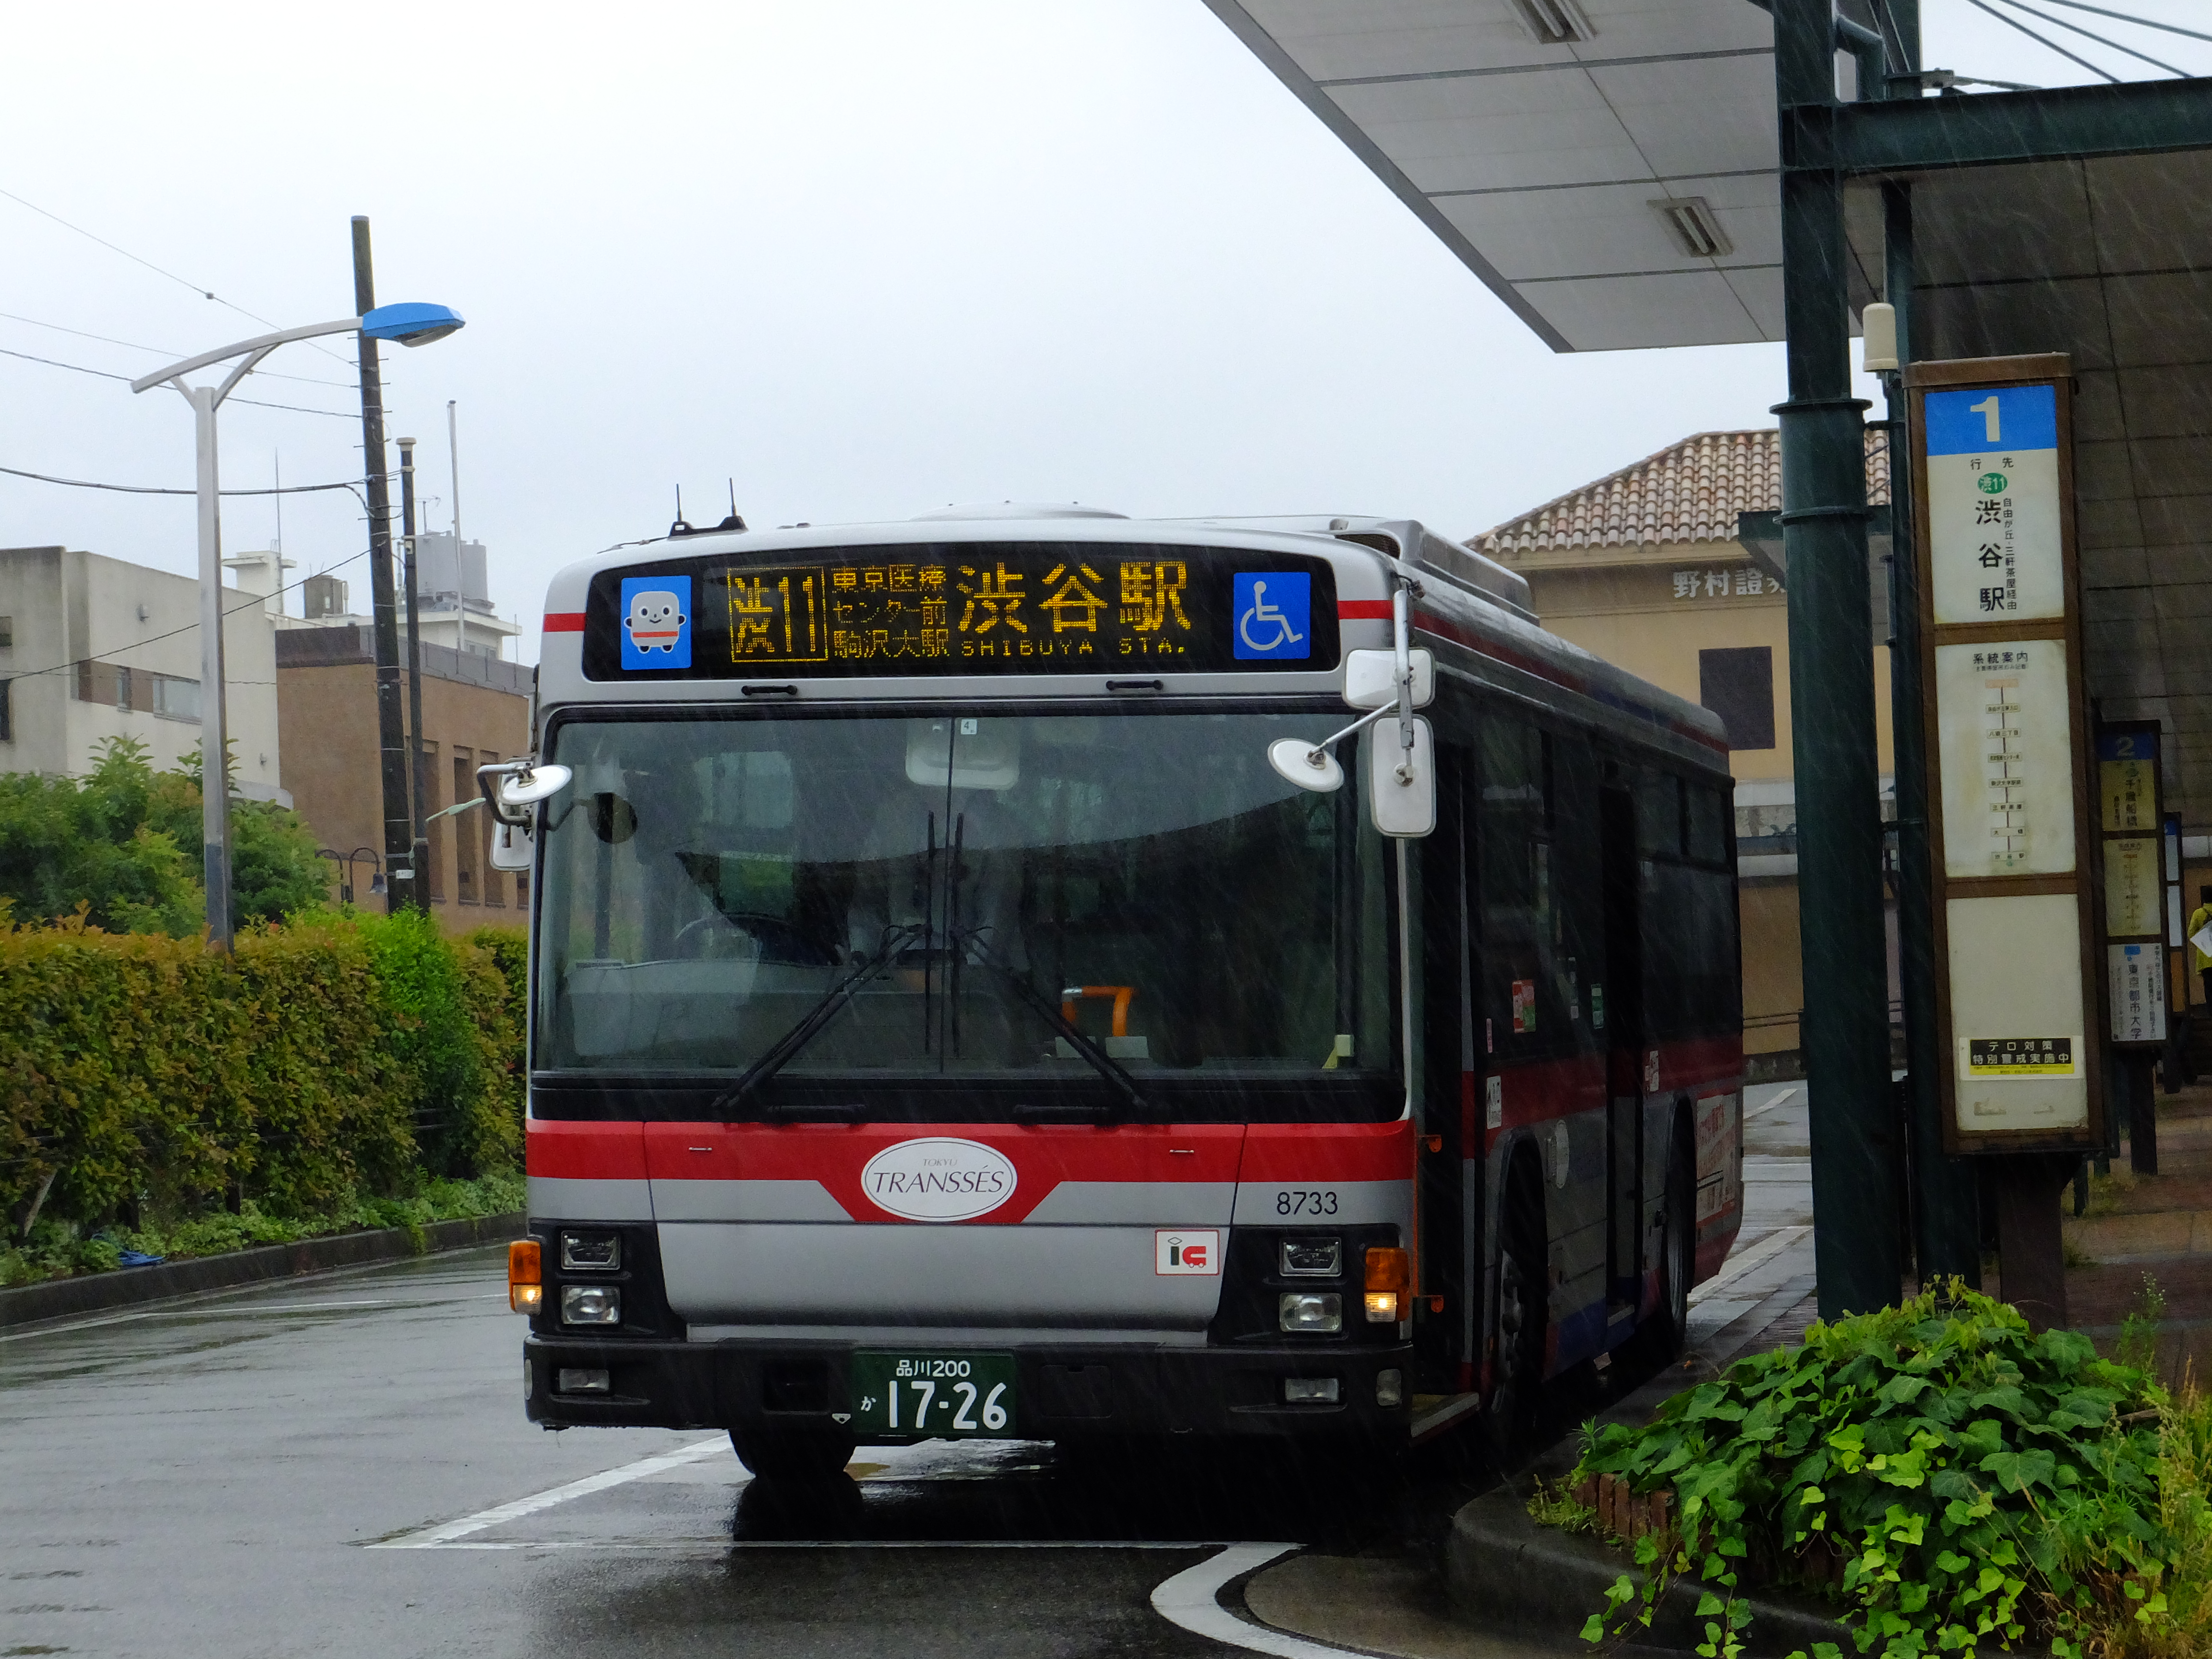 東横線 東急バスでどこまで行けるか その7 自由が丘駅 田園調布駅 オモニバス